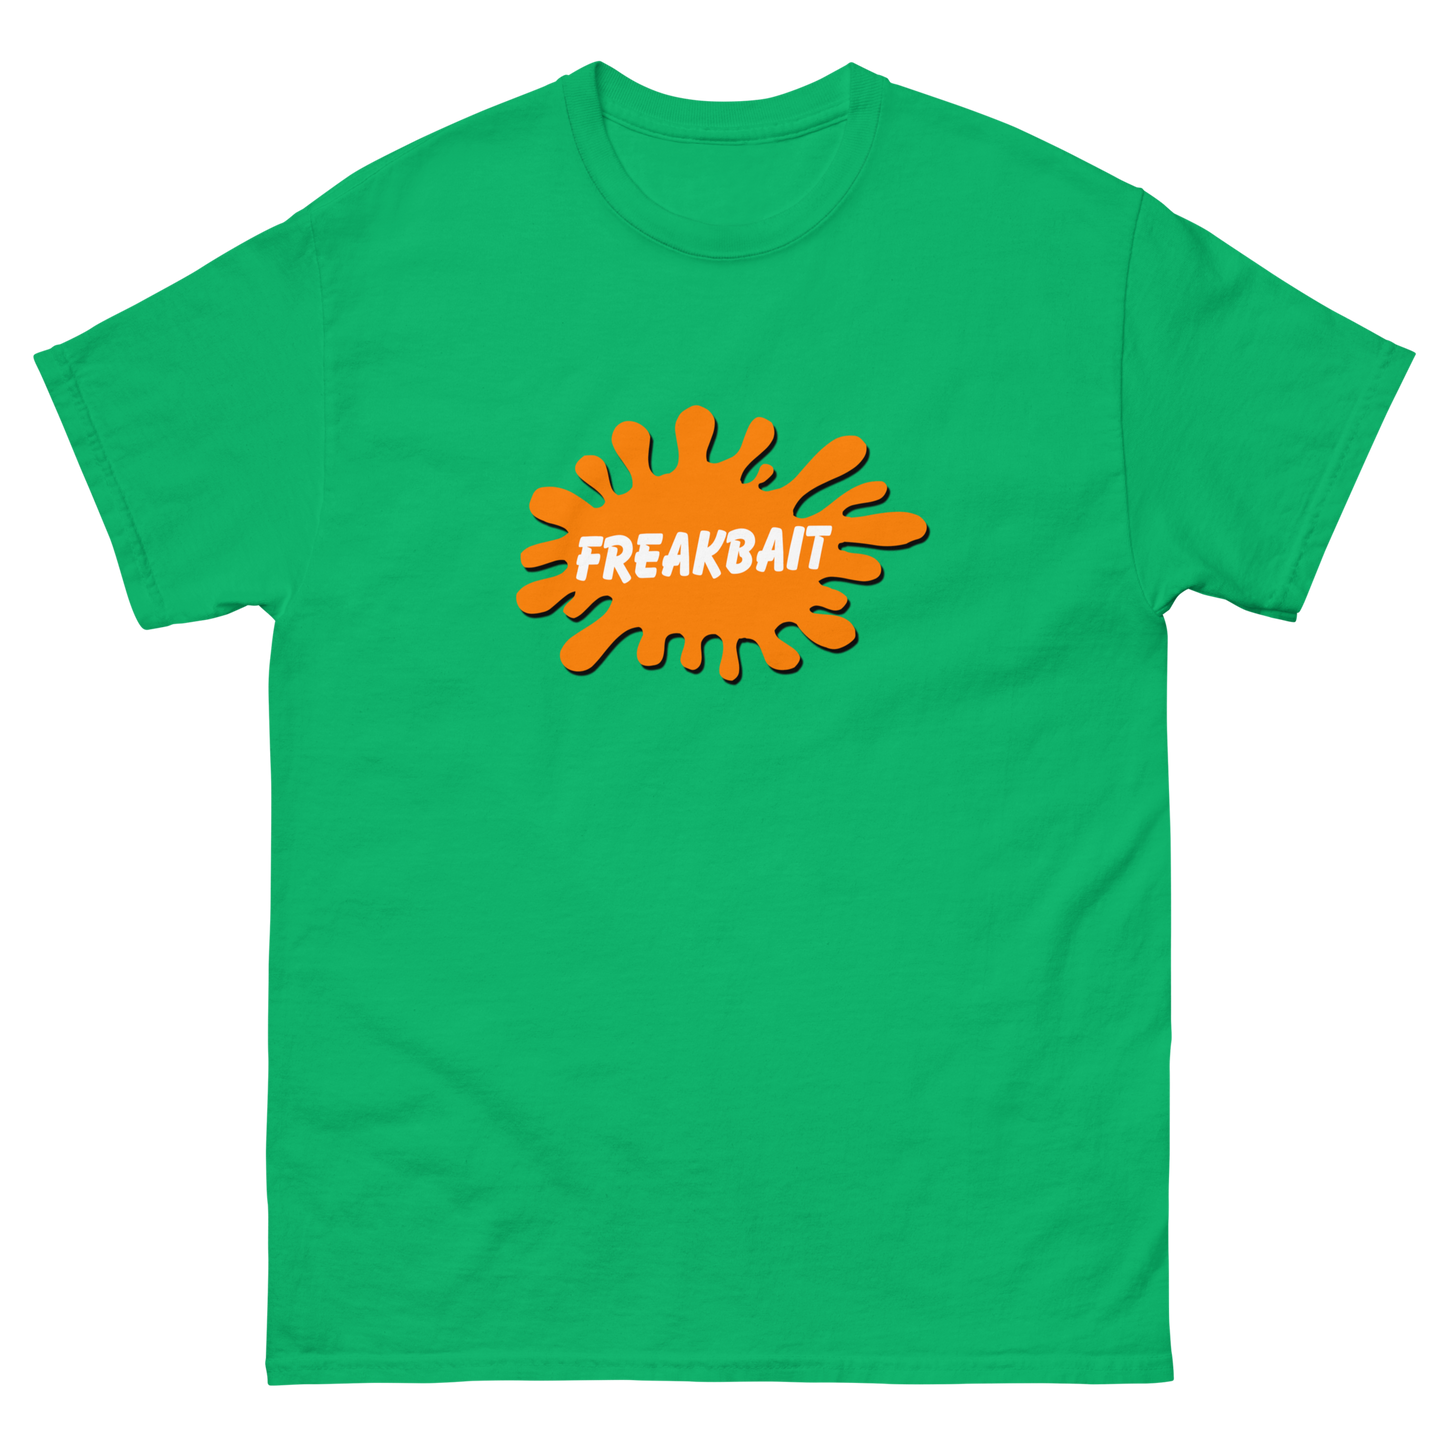 FREAKELODEON (shirt)